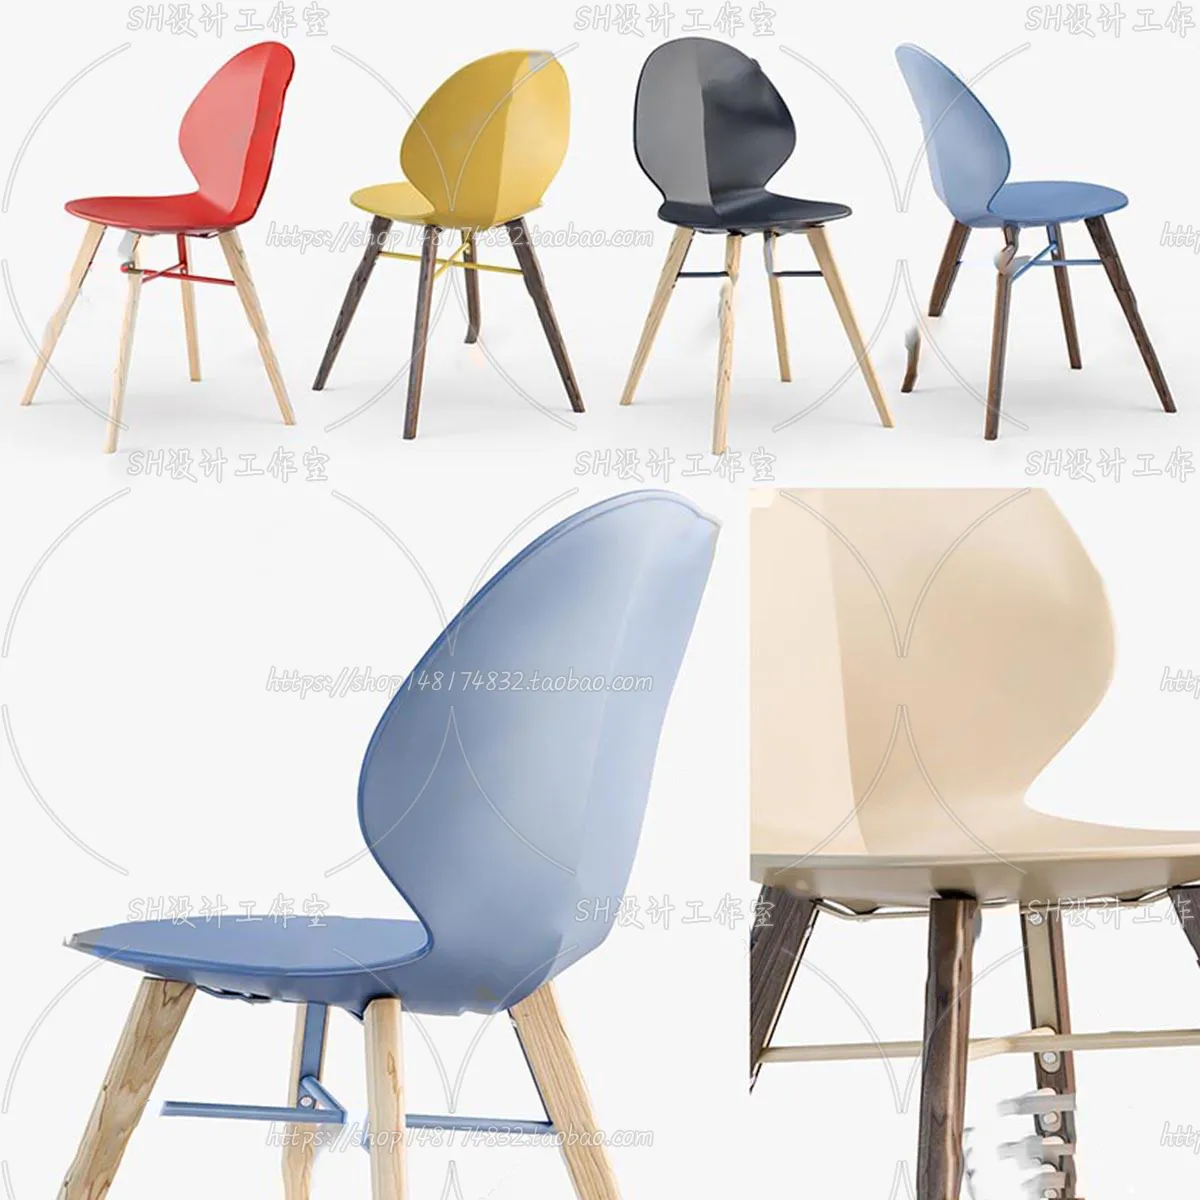 Chair – Single Chair 3D Models – 1928